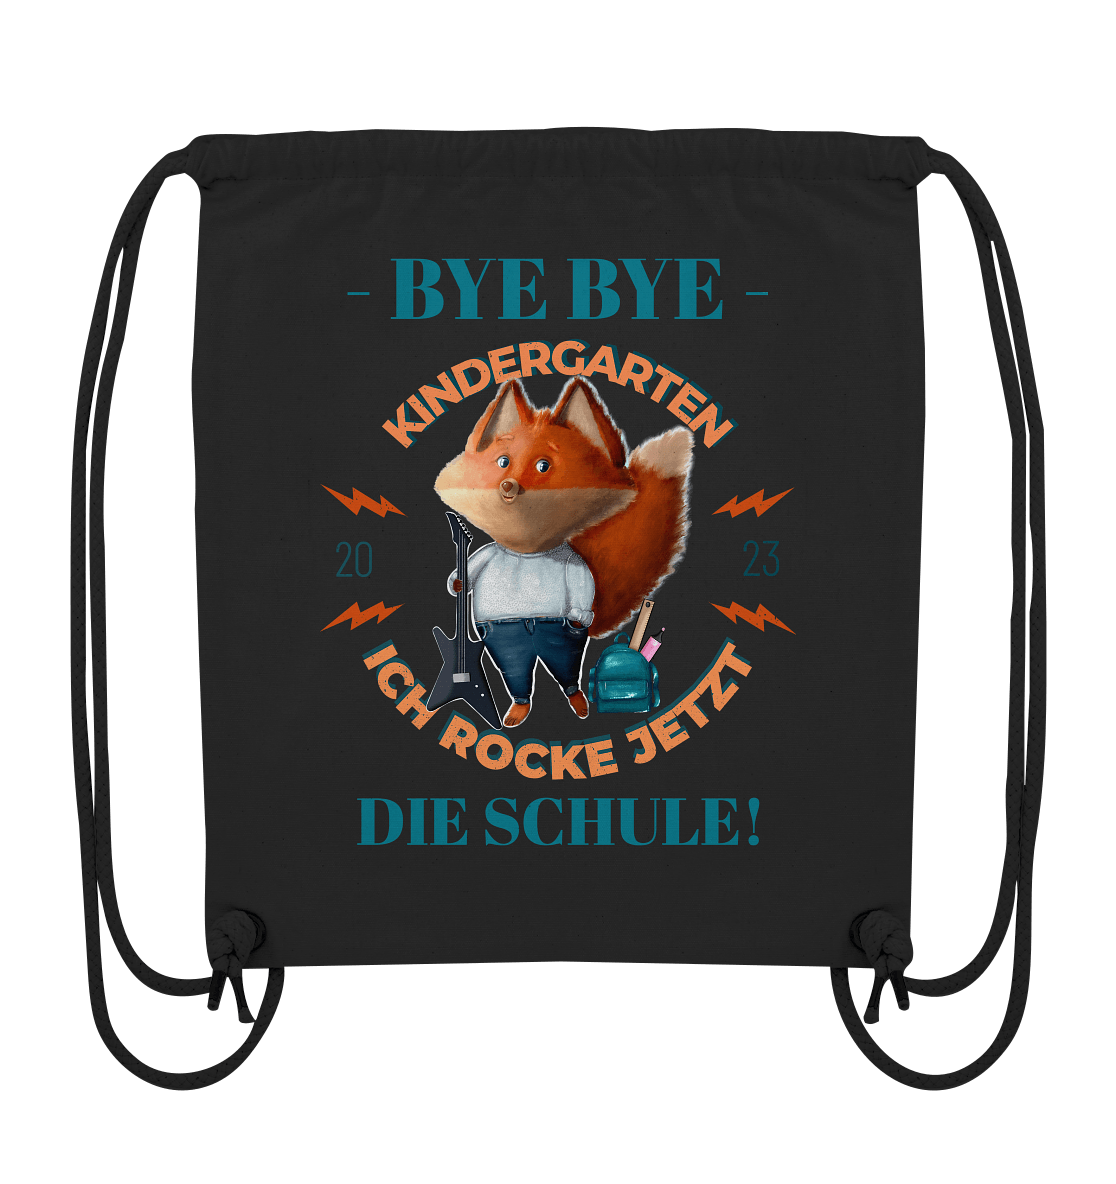 Bye-Bye-Kindergarten-ich-rocke-jetzt-die-schule-2023-Turnbeutel-schwarz